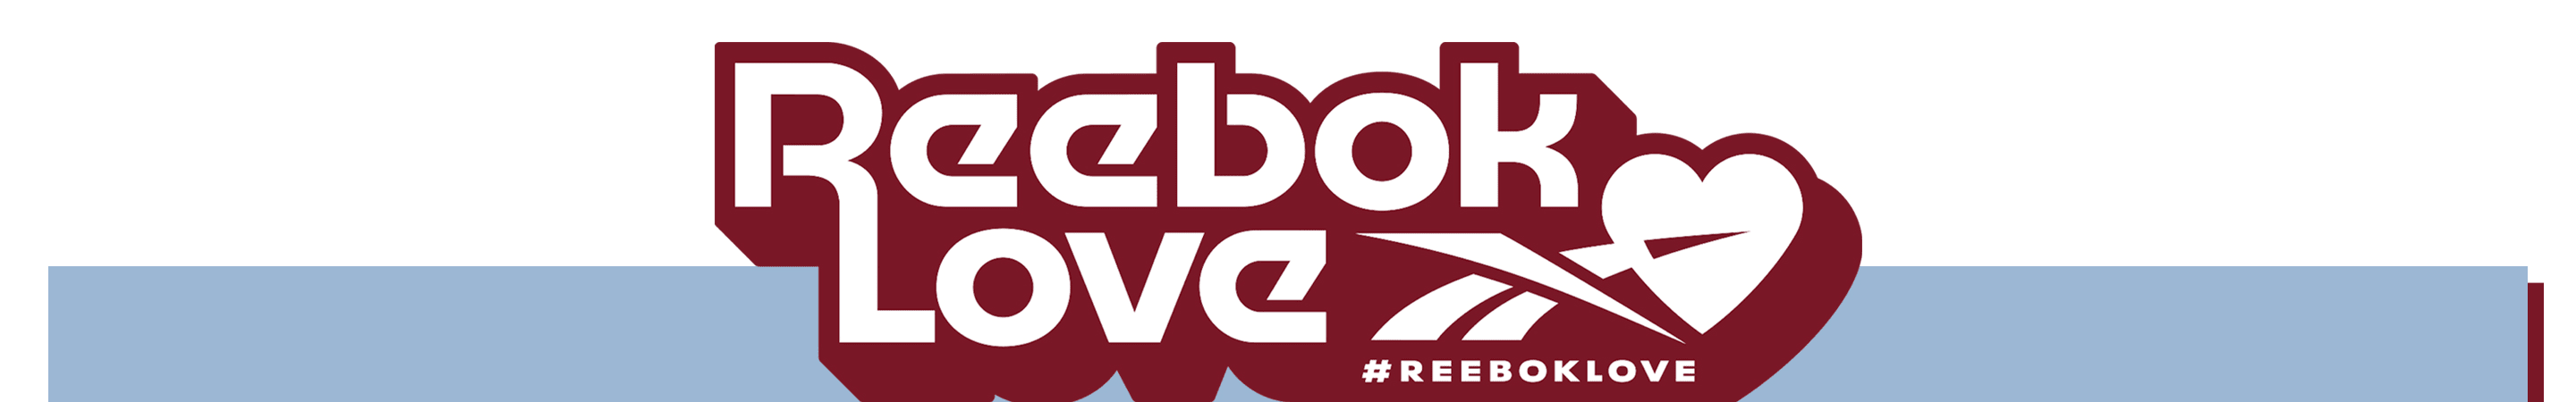 reebok sign up offer